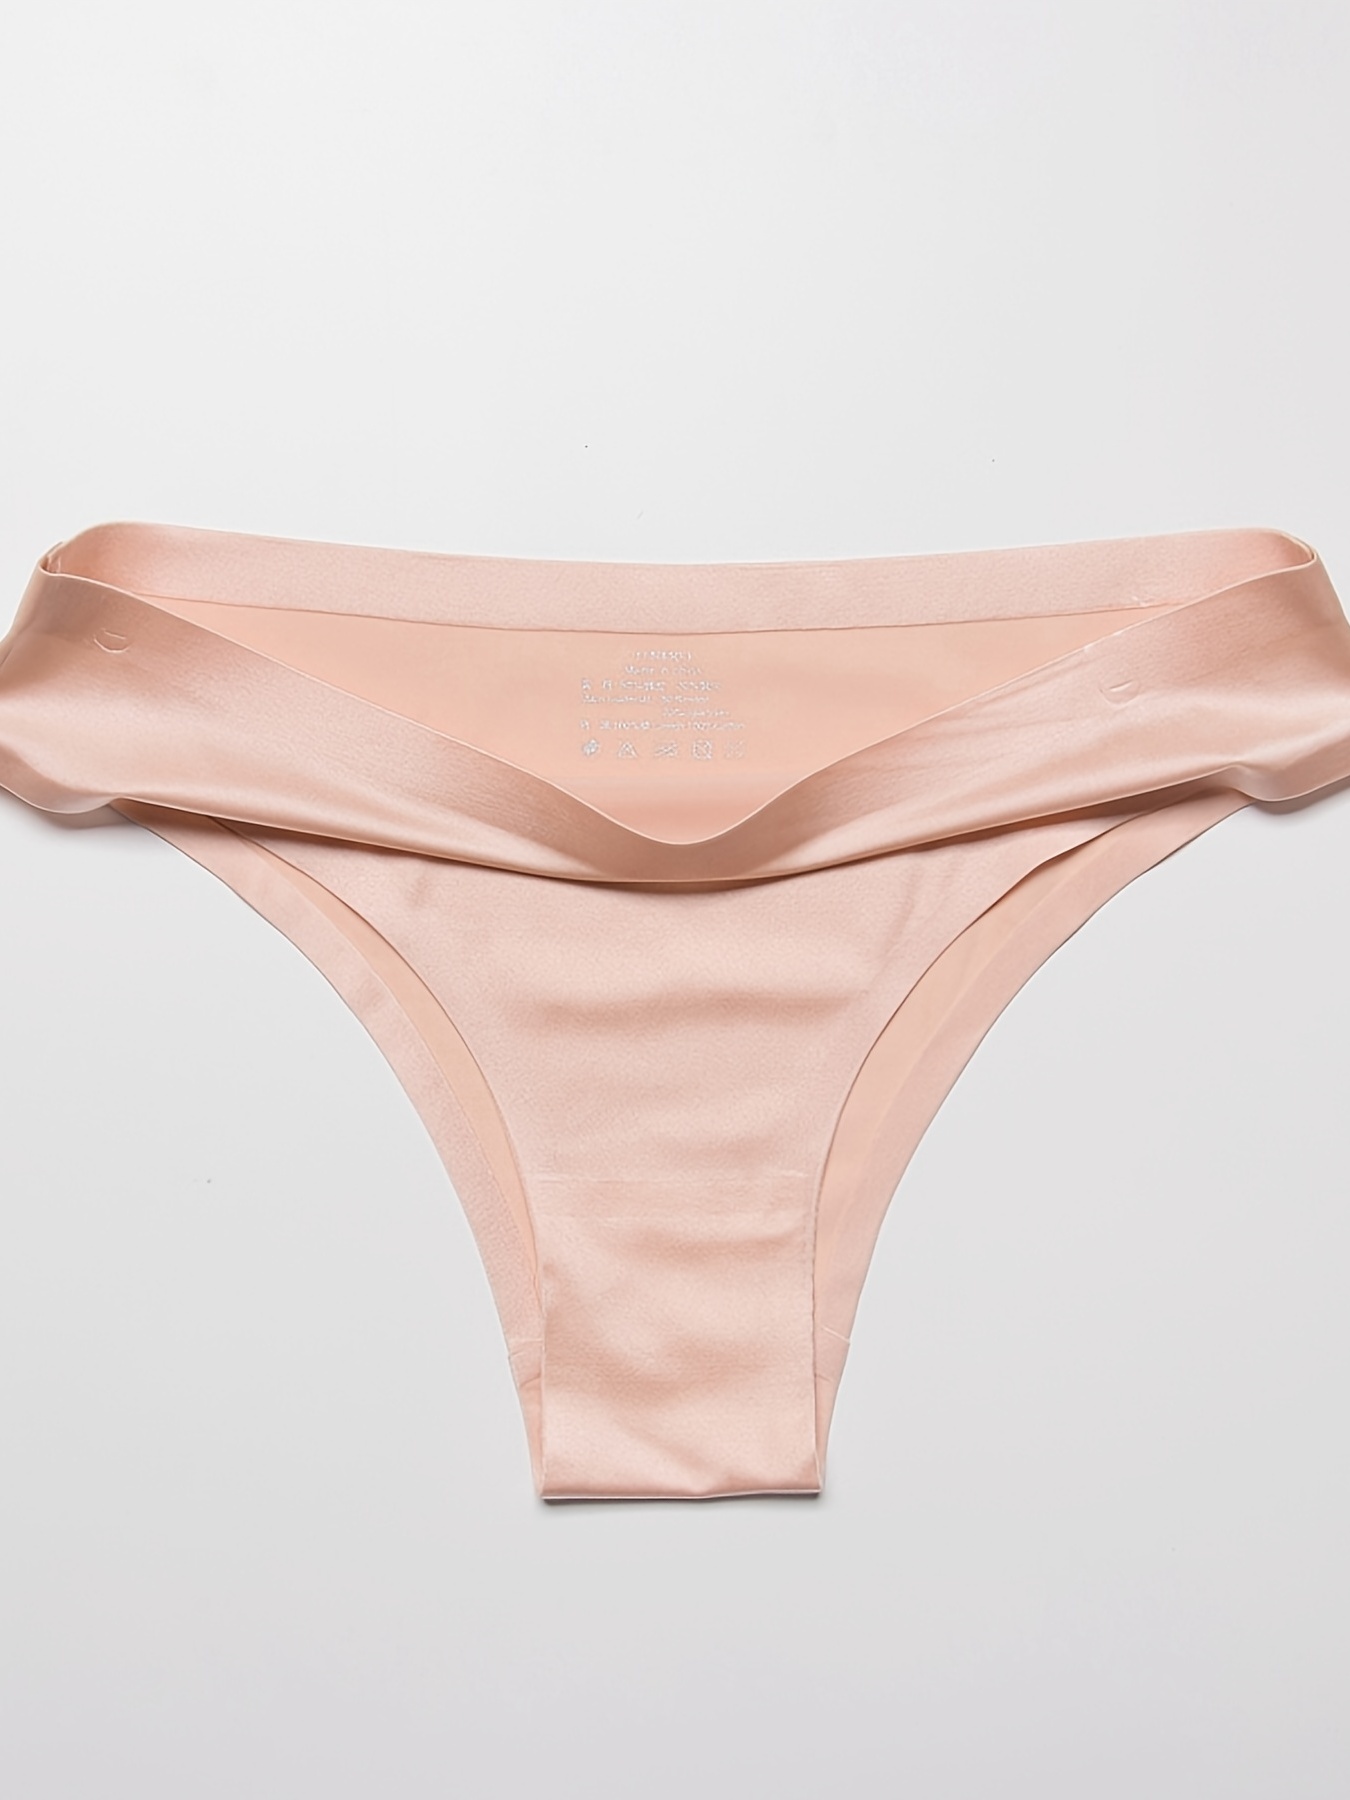 Womens Panties Women Seamless Silk Sports Comfort G String